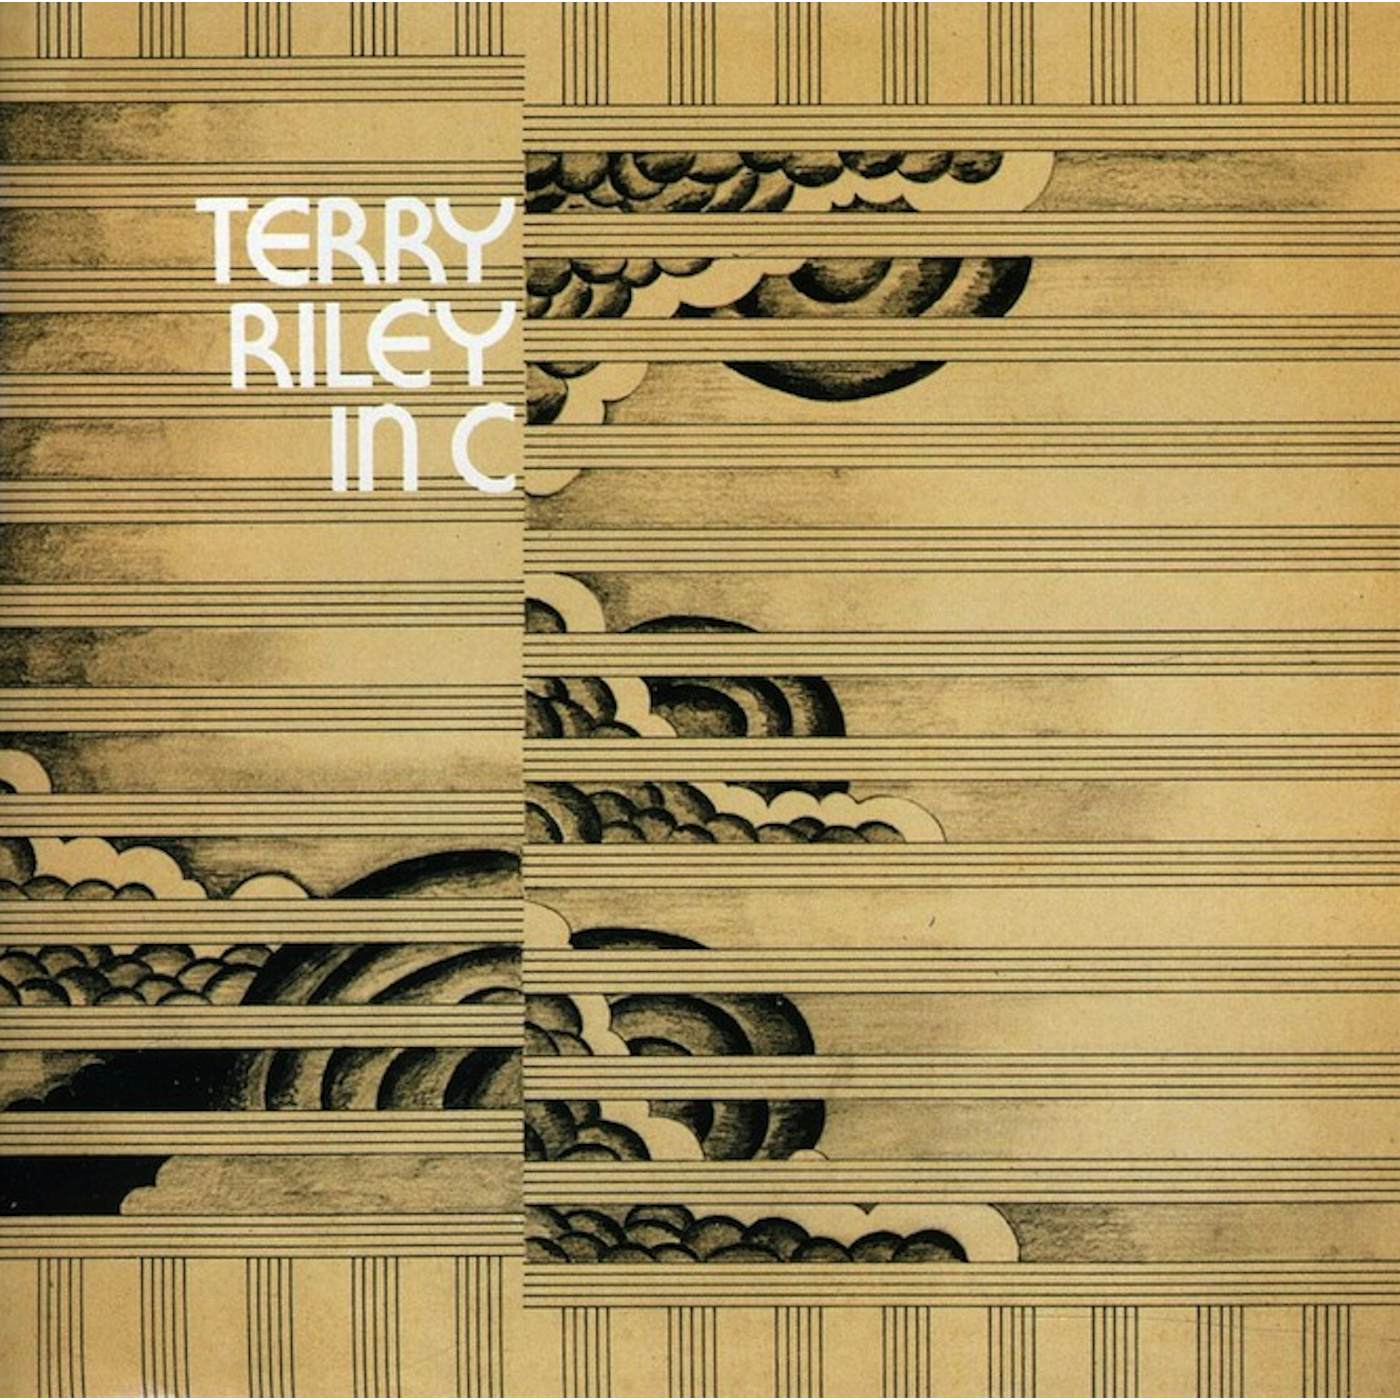 Terry Riley Riley: In C Vinyl Record